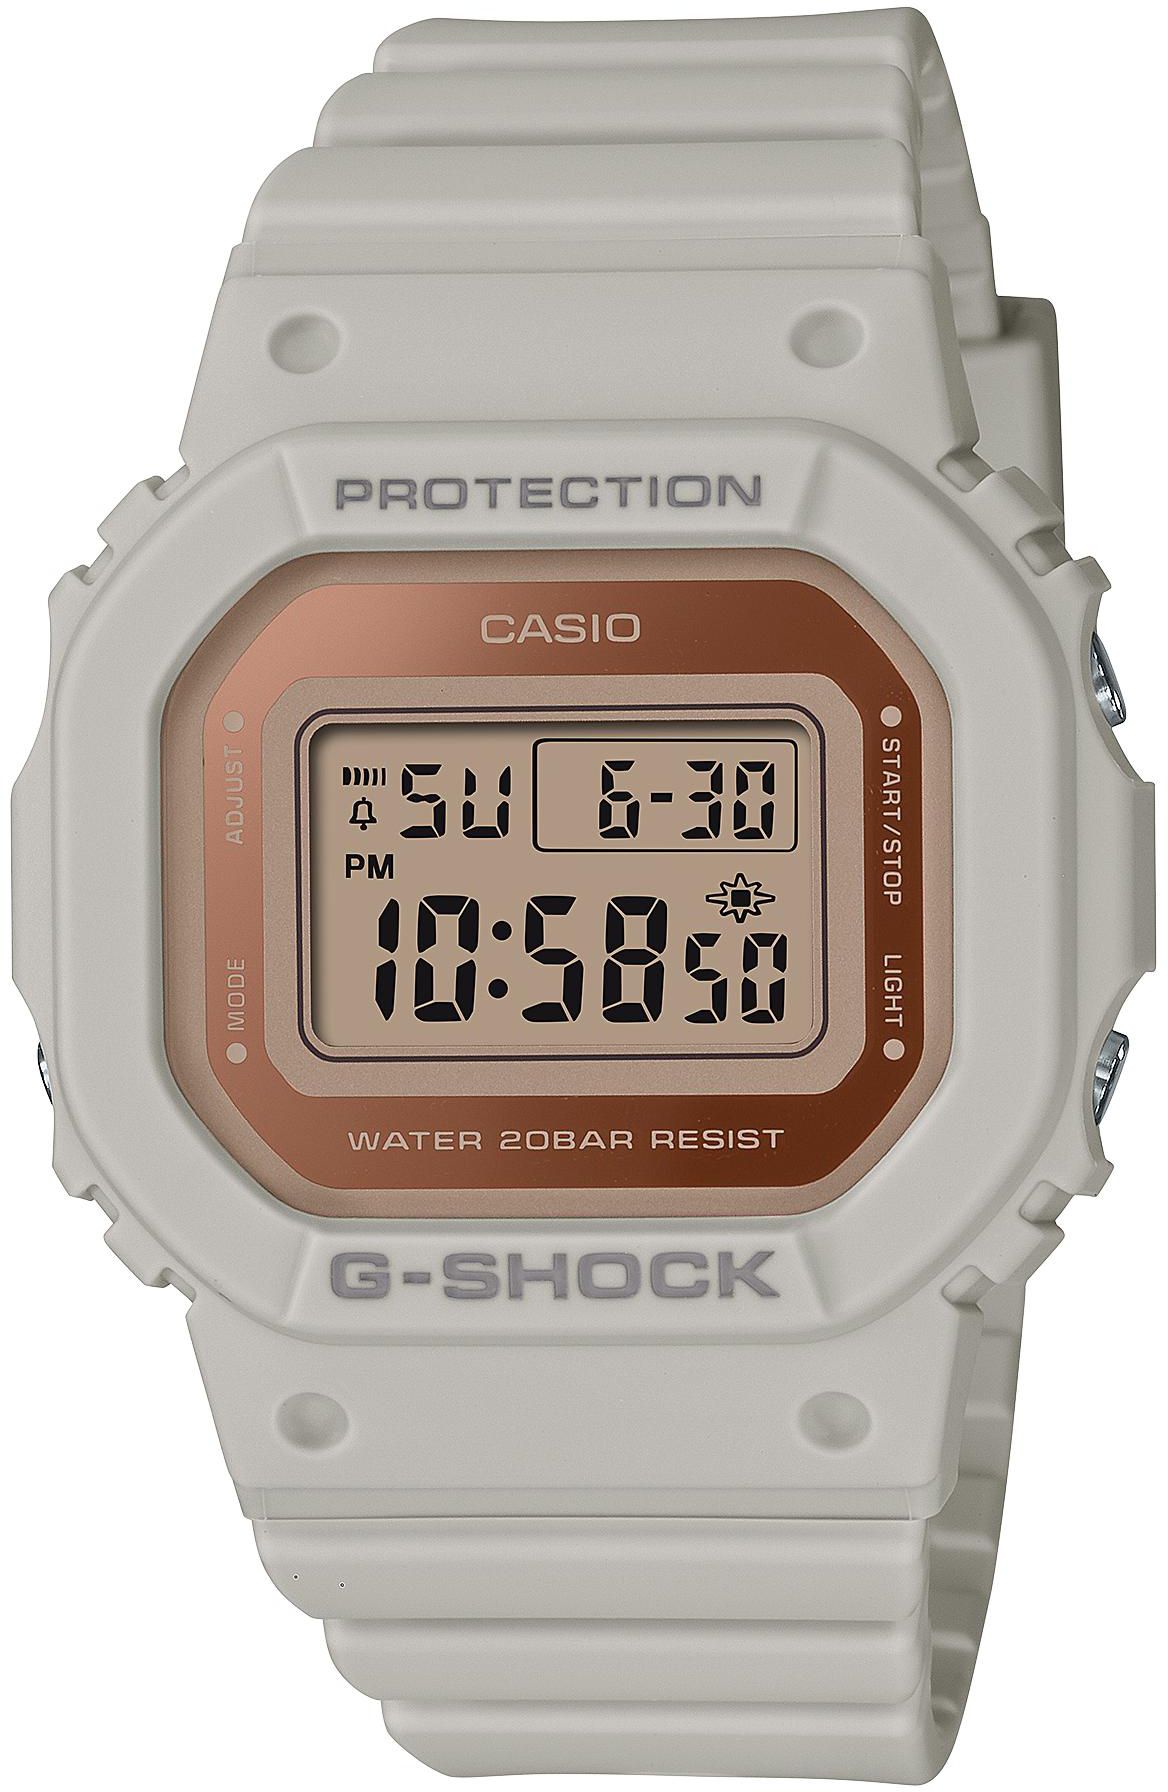 Women's Watches CASIO G-SHOCK GMD-S5600-8DR